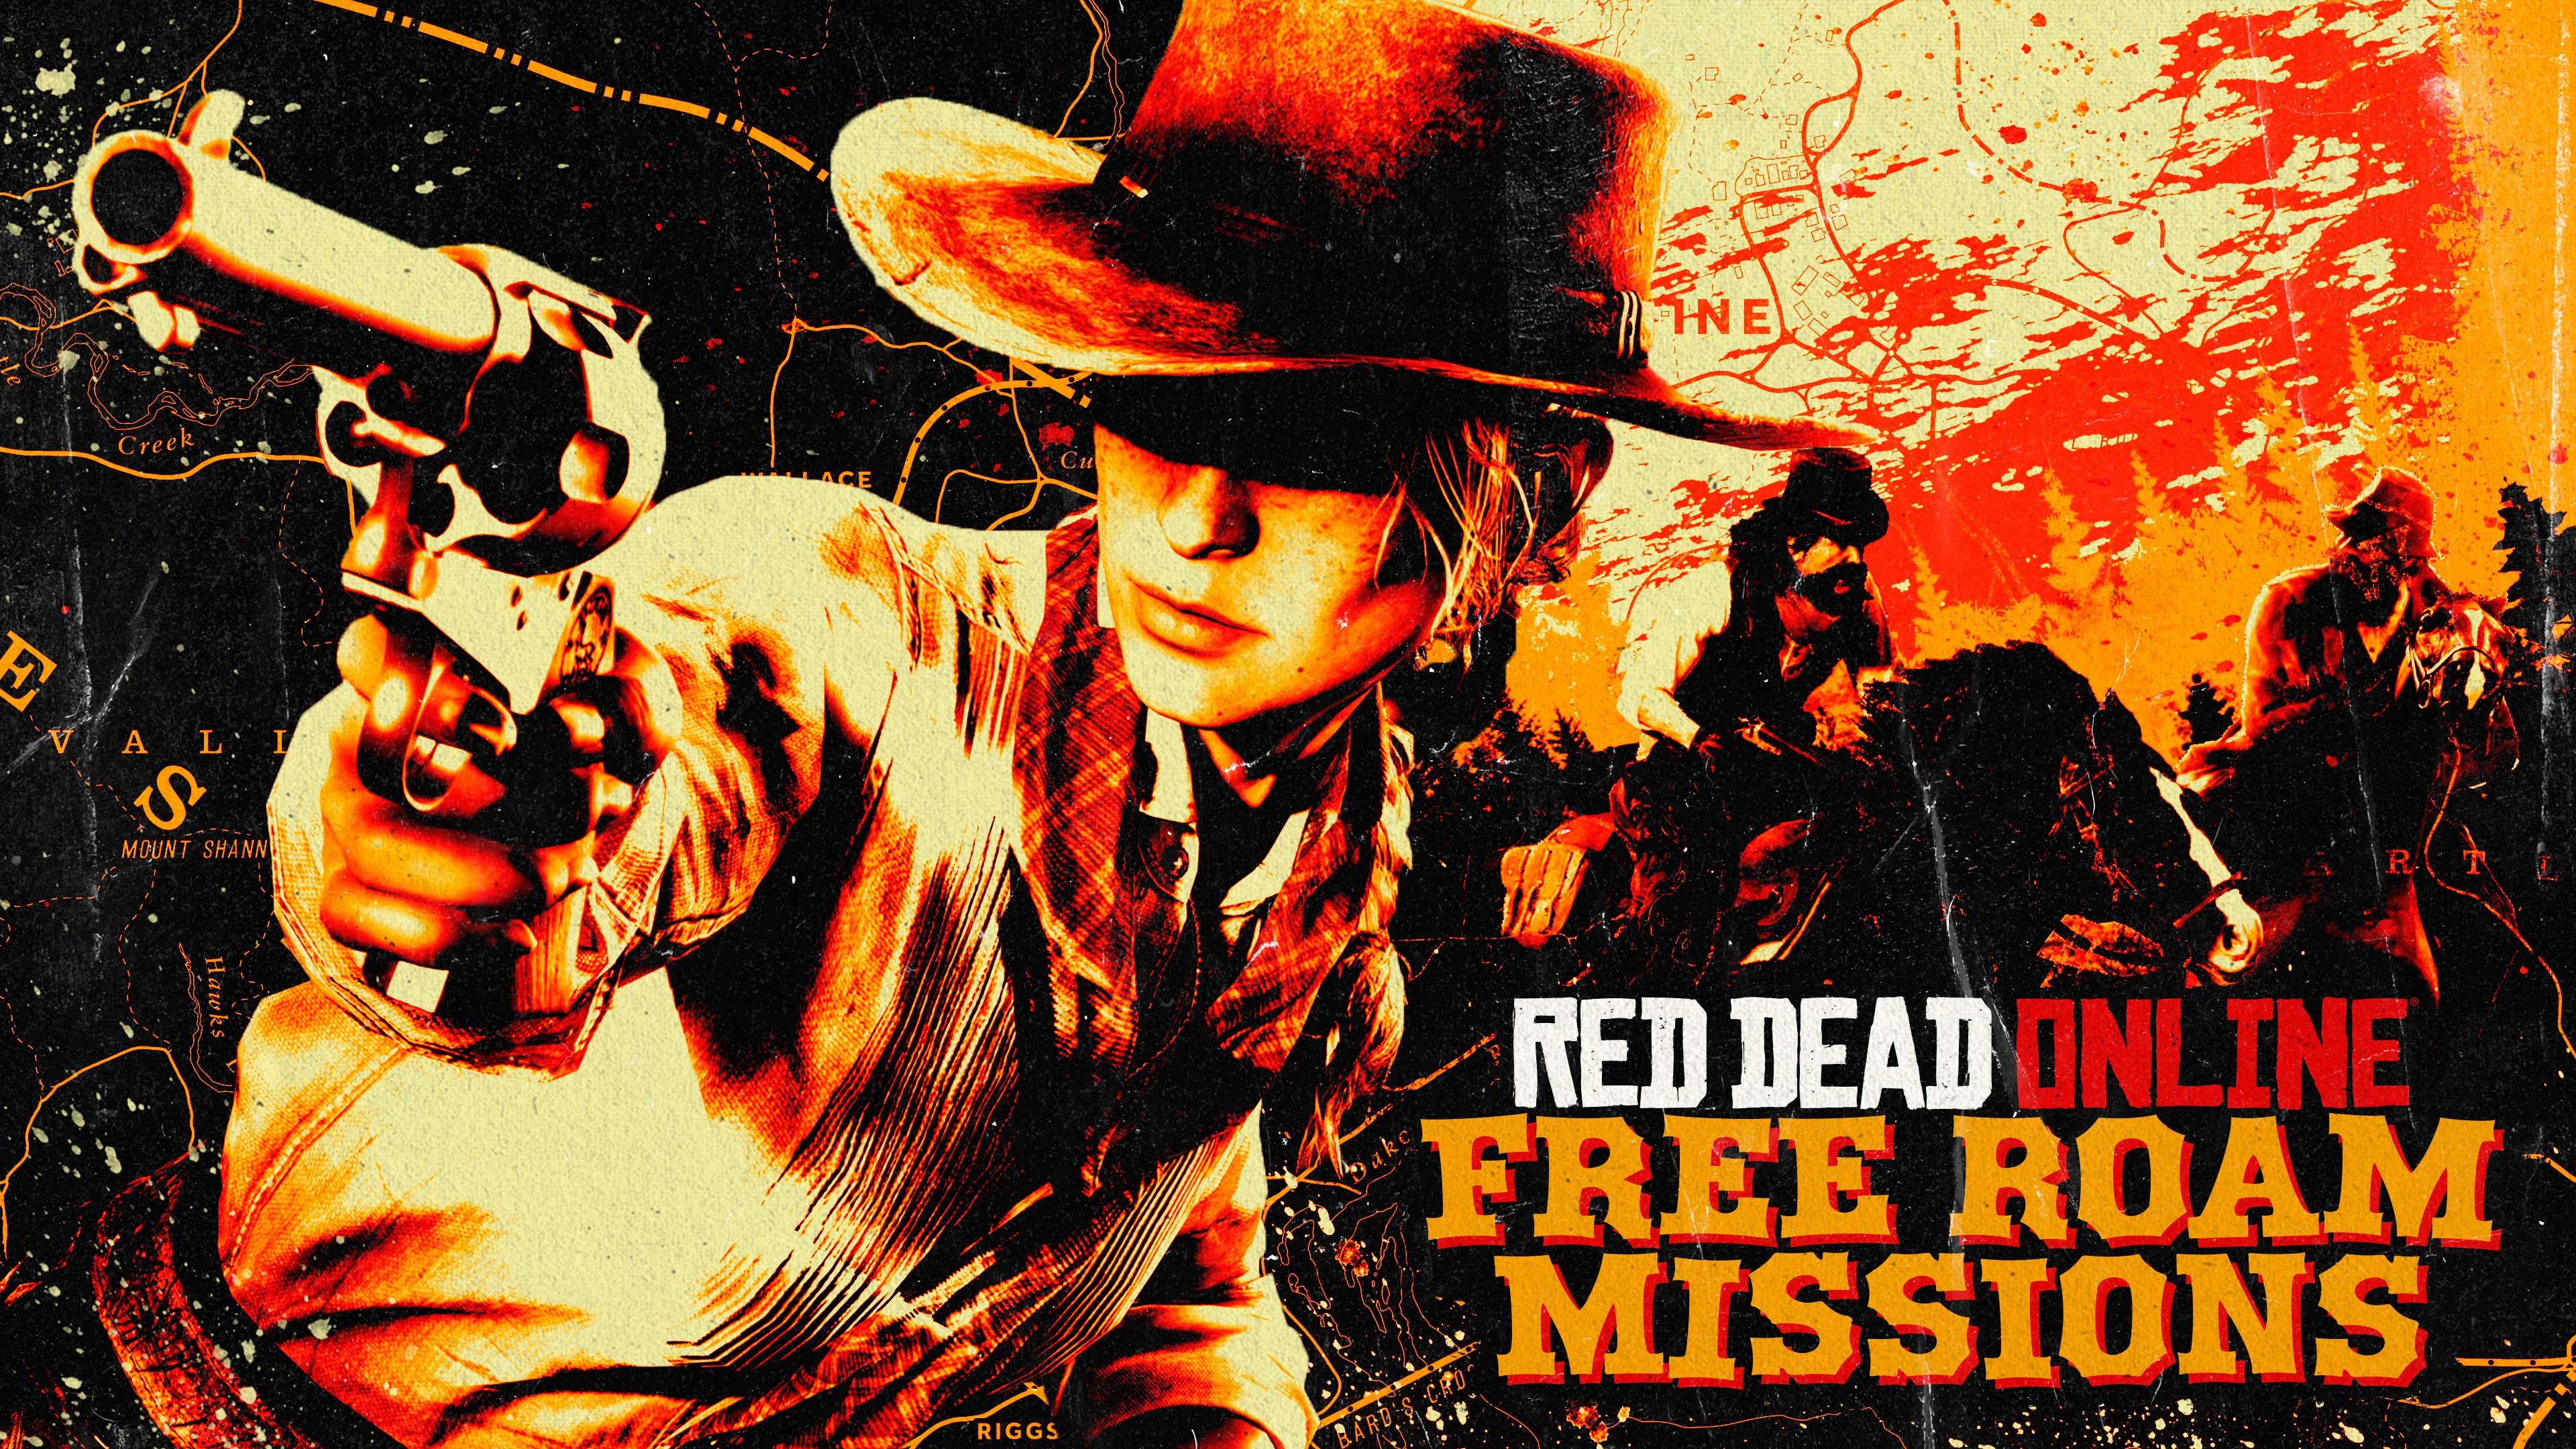 Arte e logotipo de missões do Modo Livre de Red Dead Online